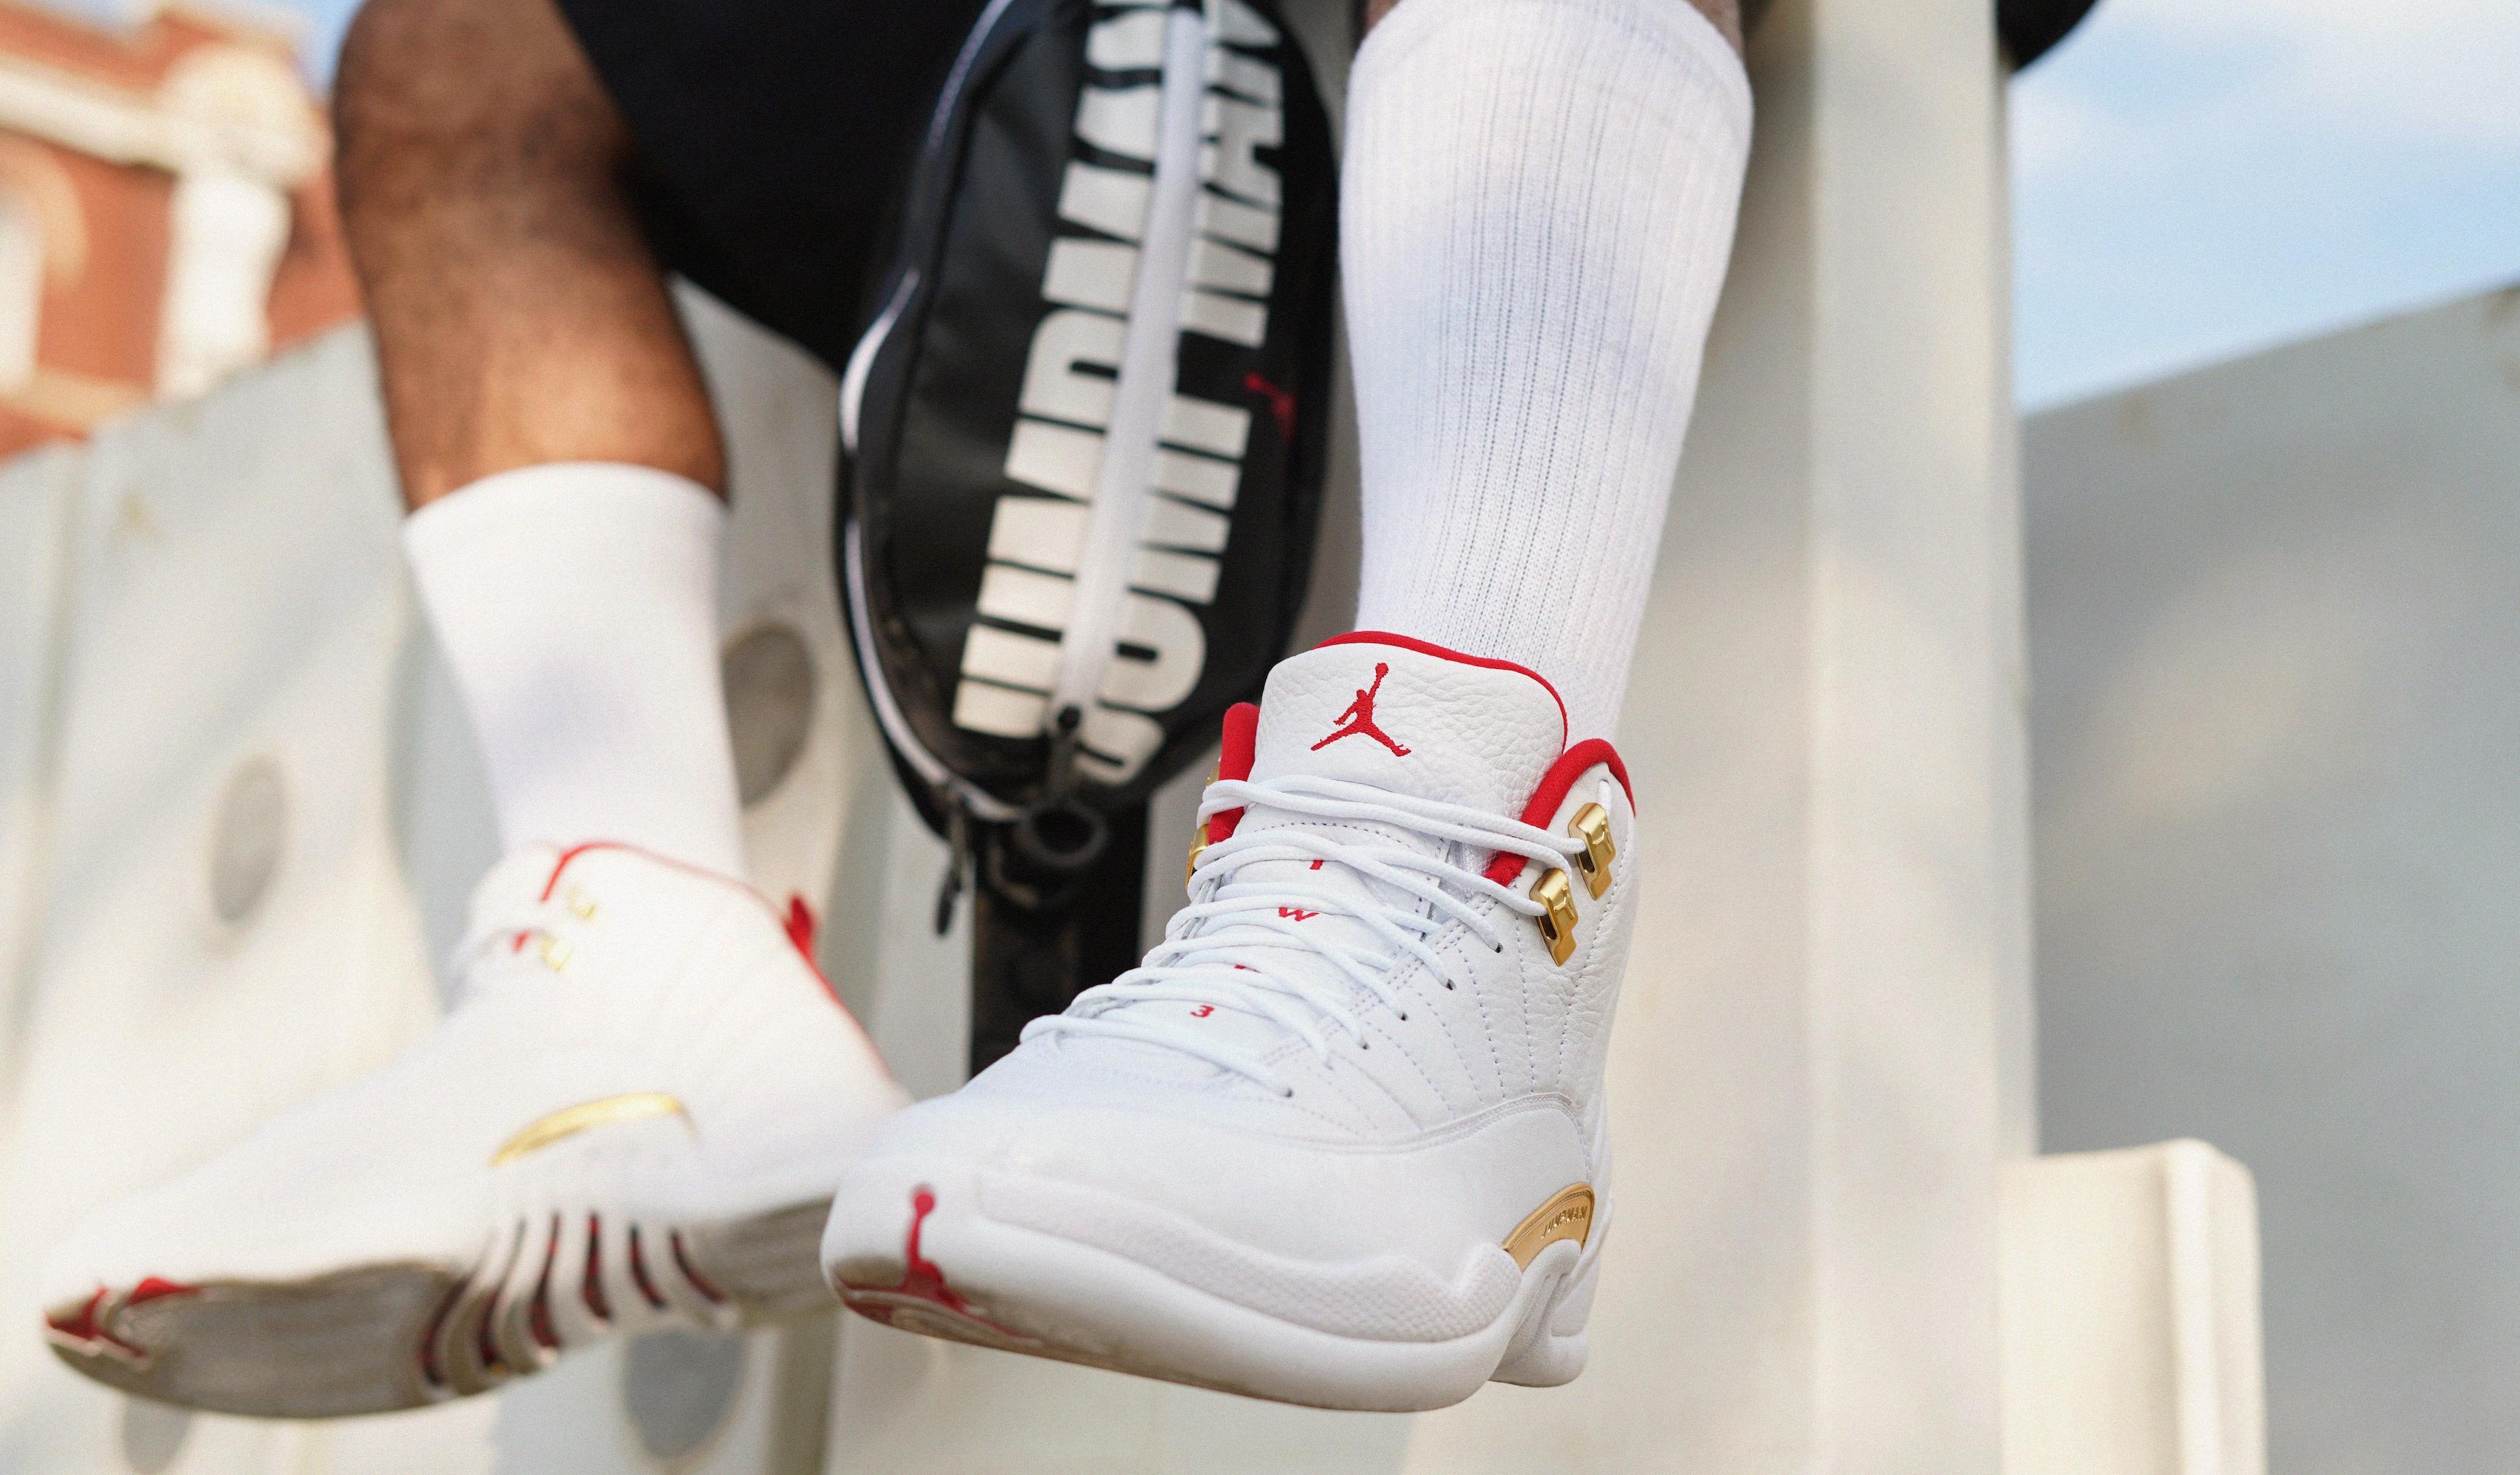 Sneakers Release : Air Jordan Retro 12 “FIBA”